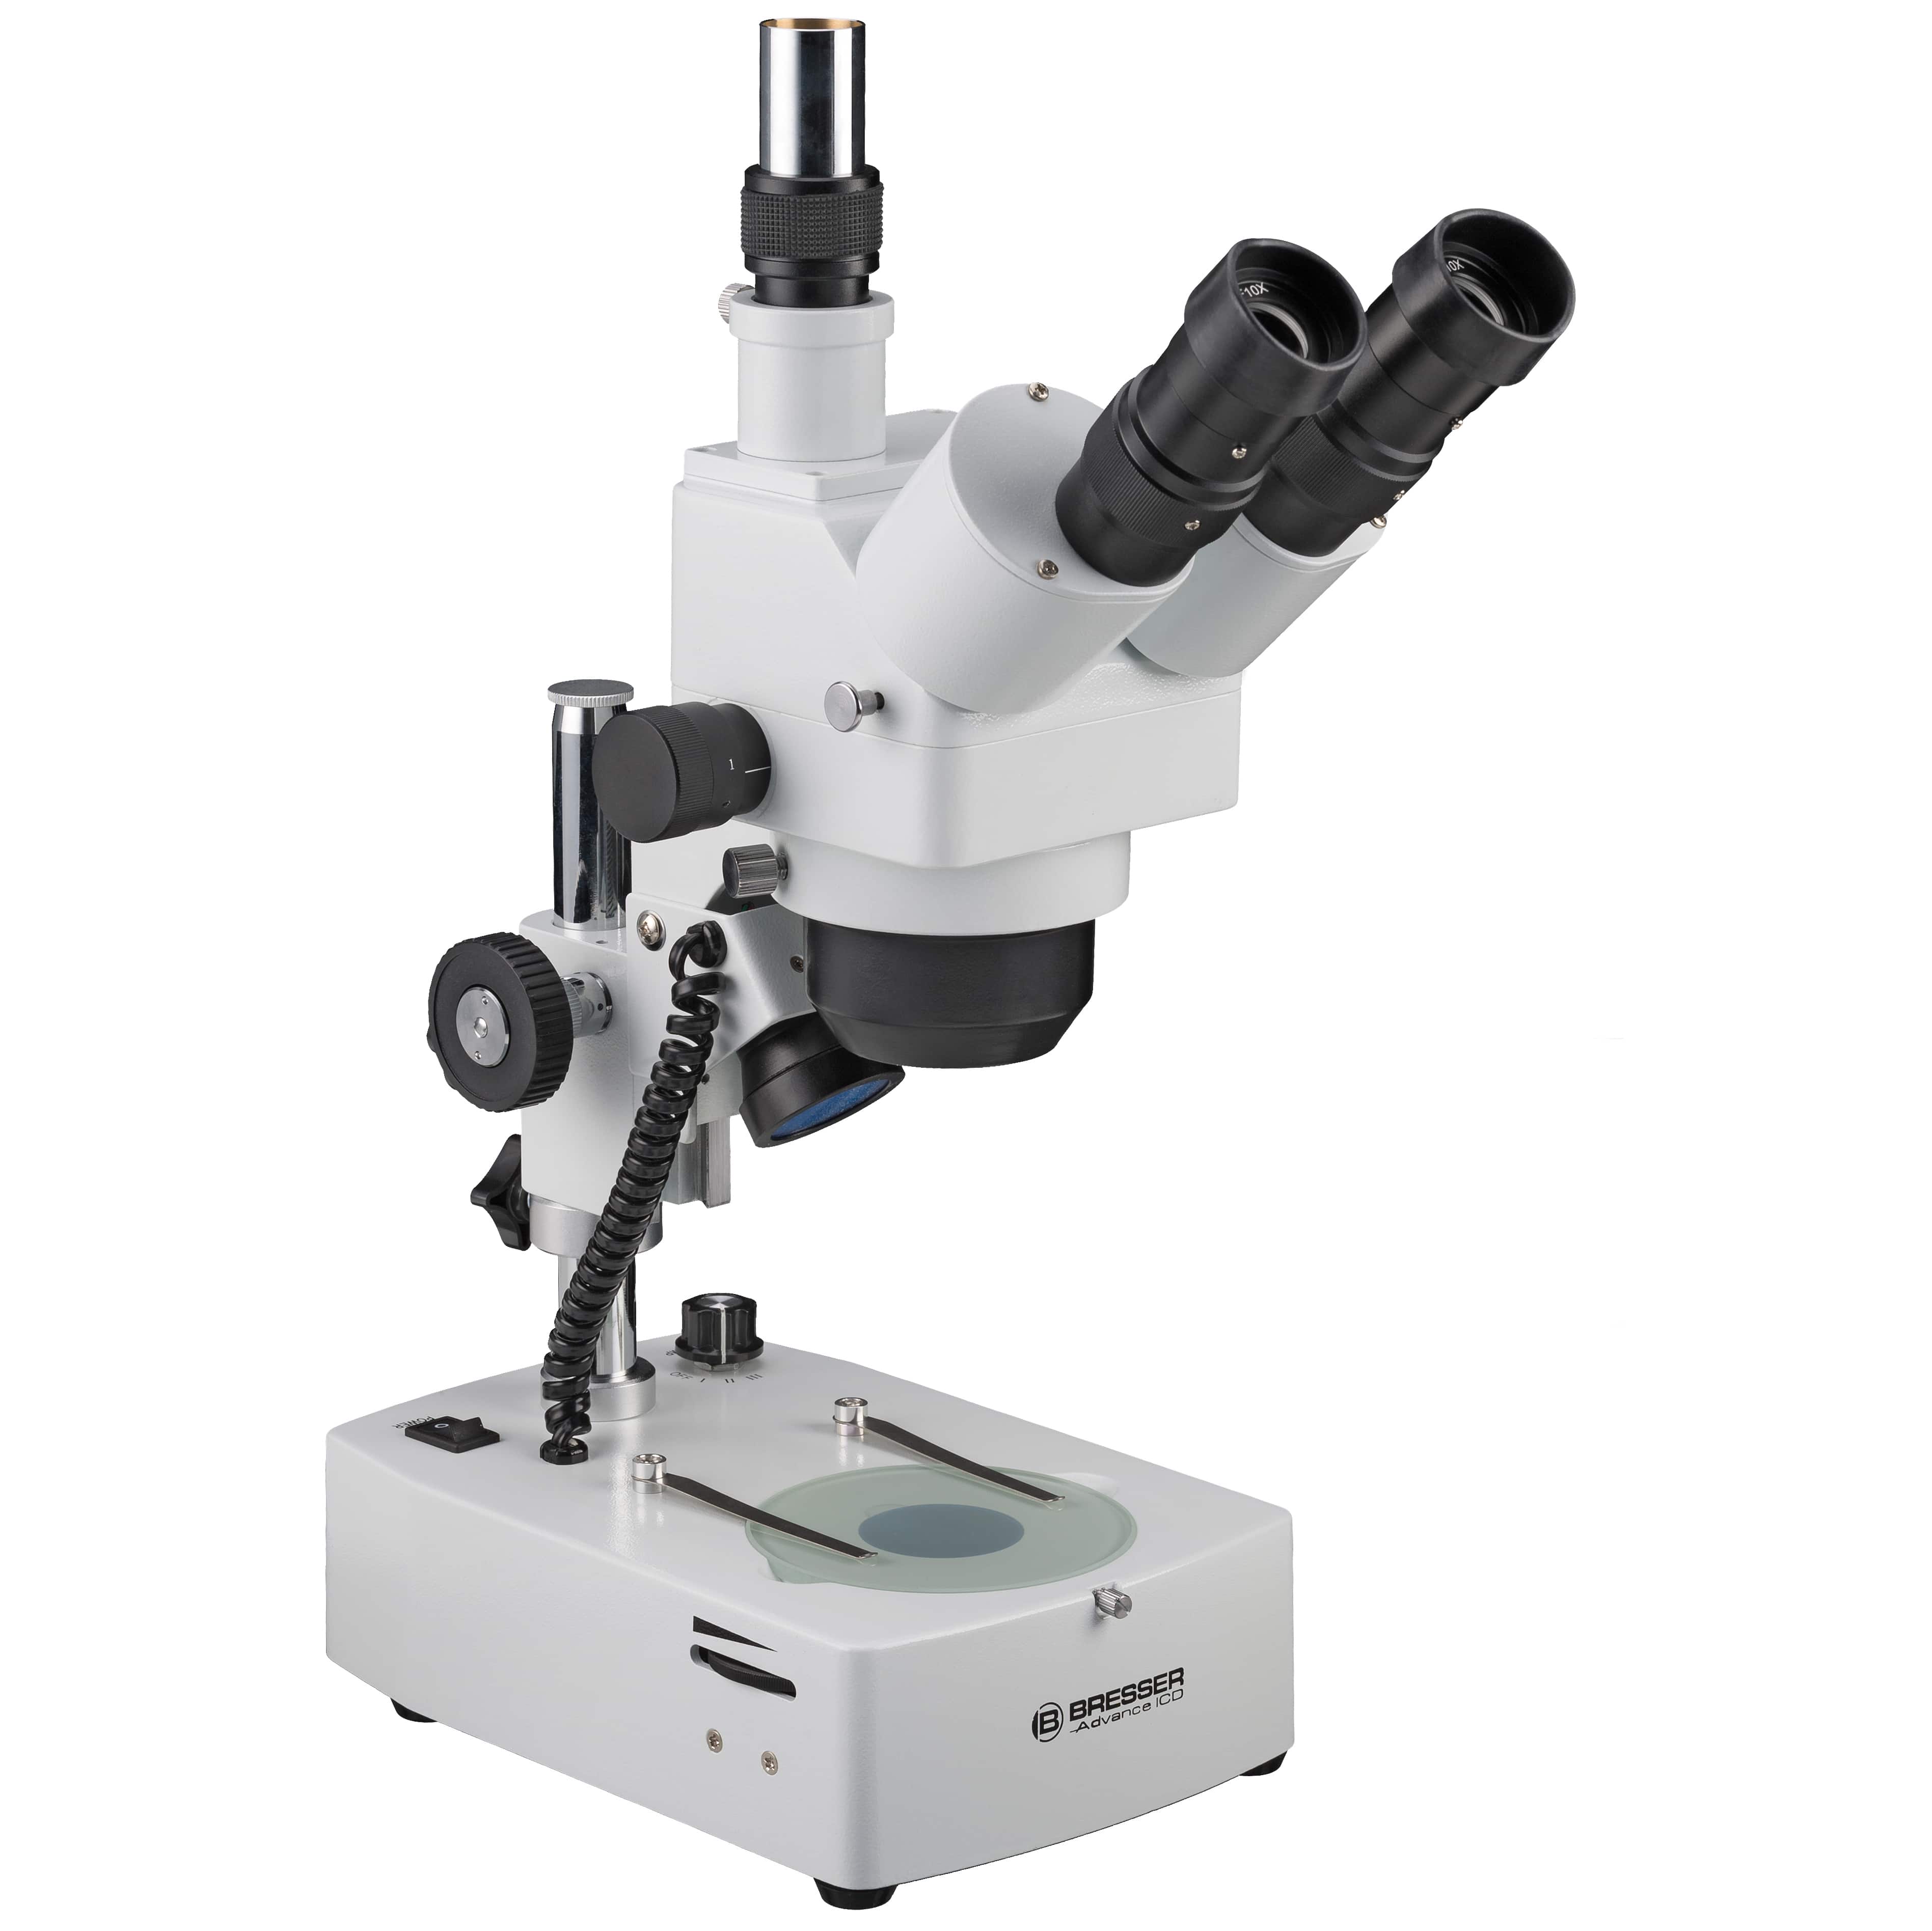   Stereomicroscopio di alta qualità per hobby e applicazioni professionali  